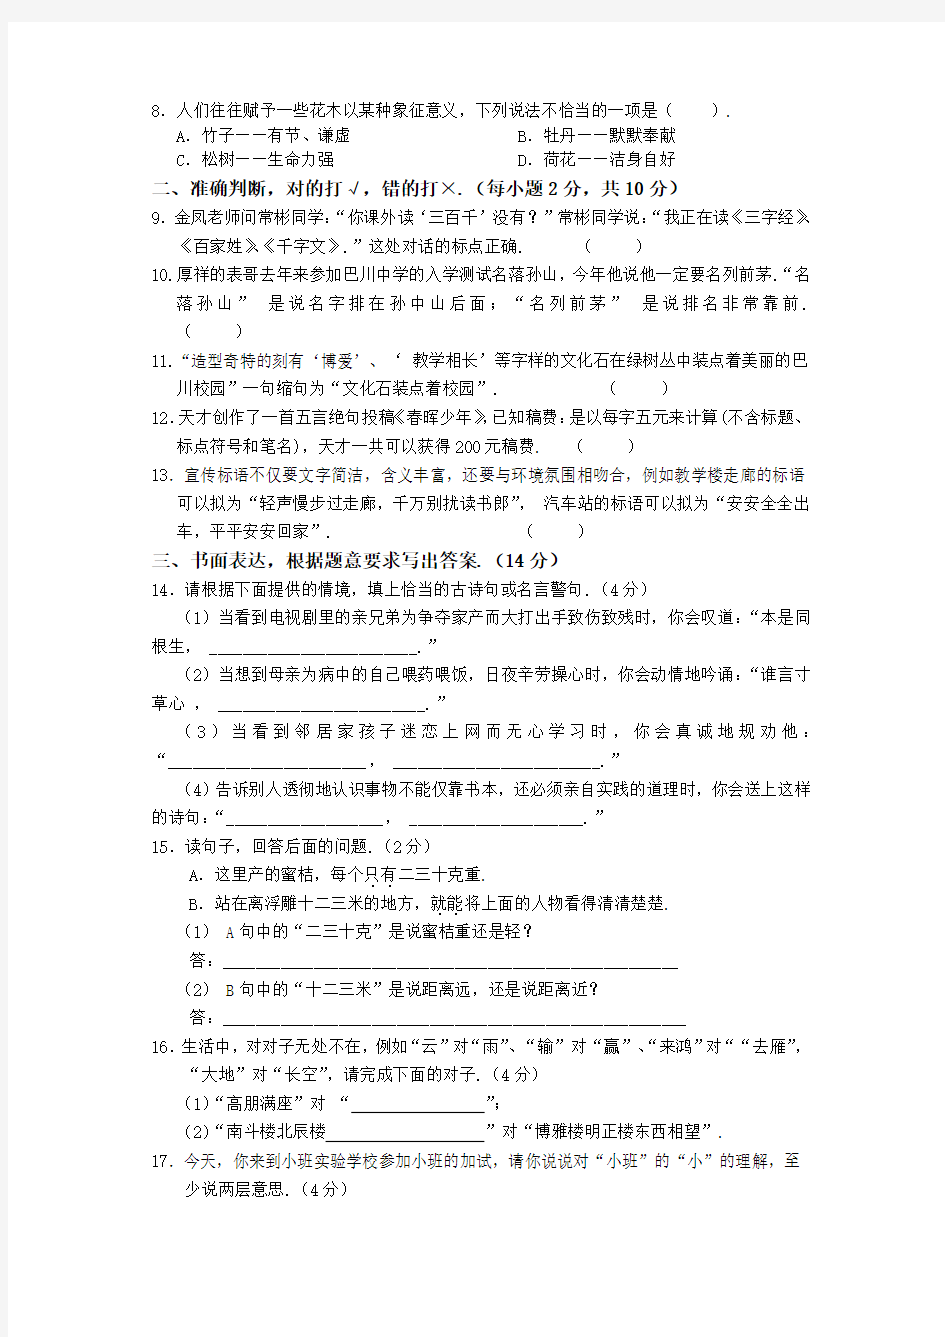 重庆市巴川中学2013年初一新生入学水平测试小班加试题